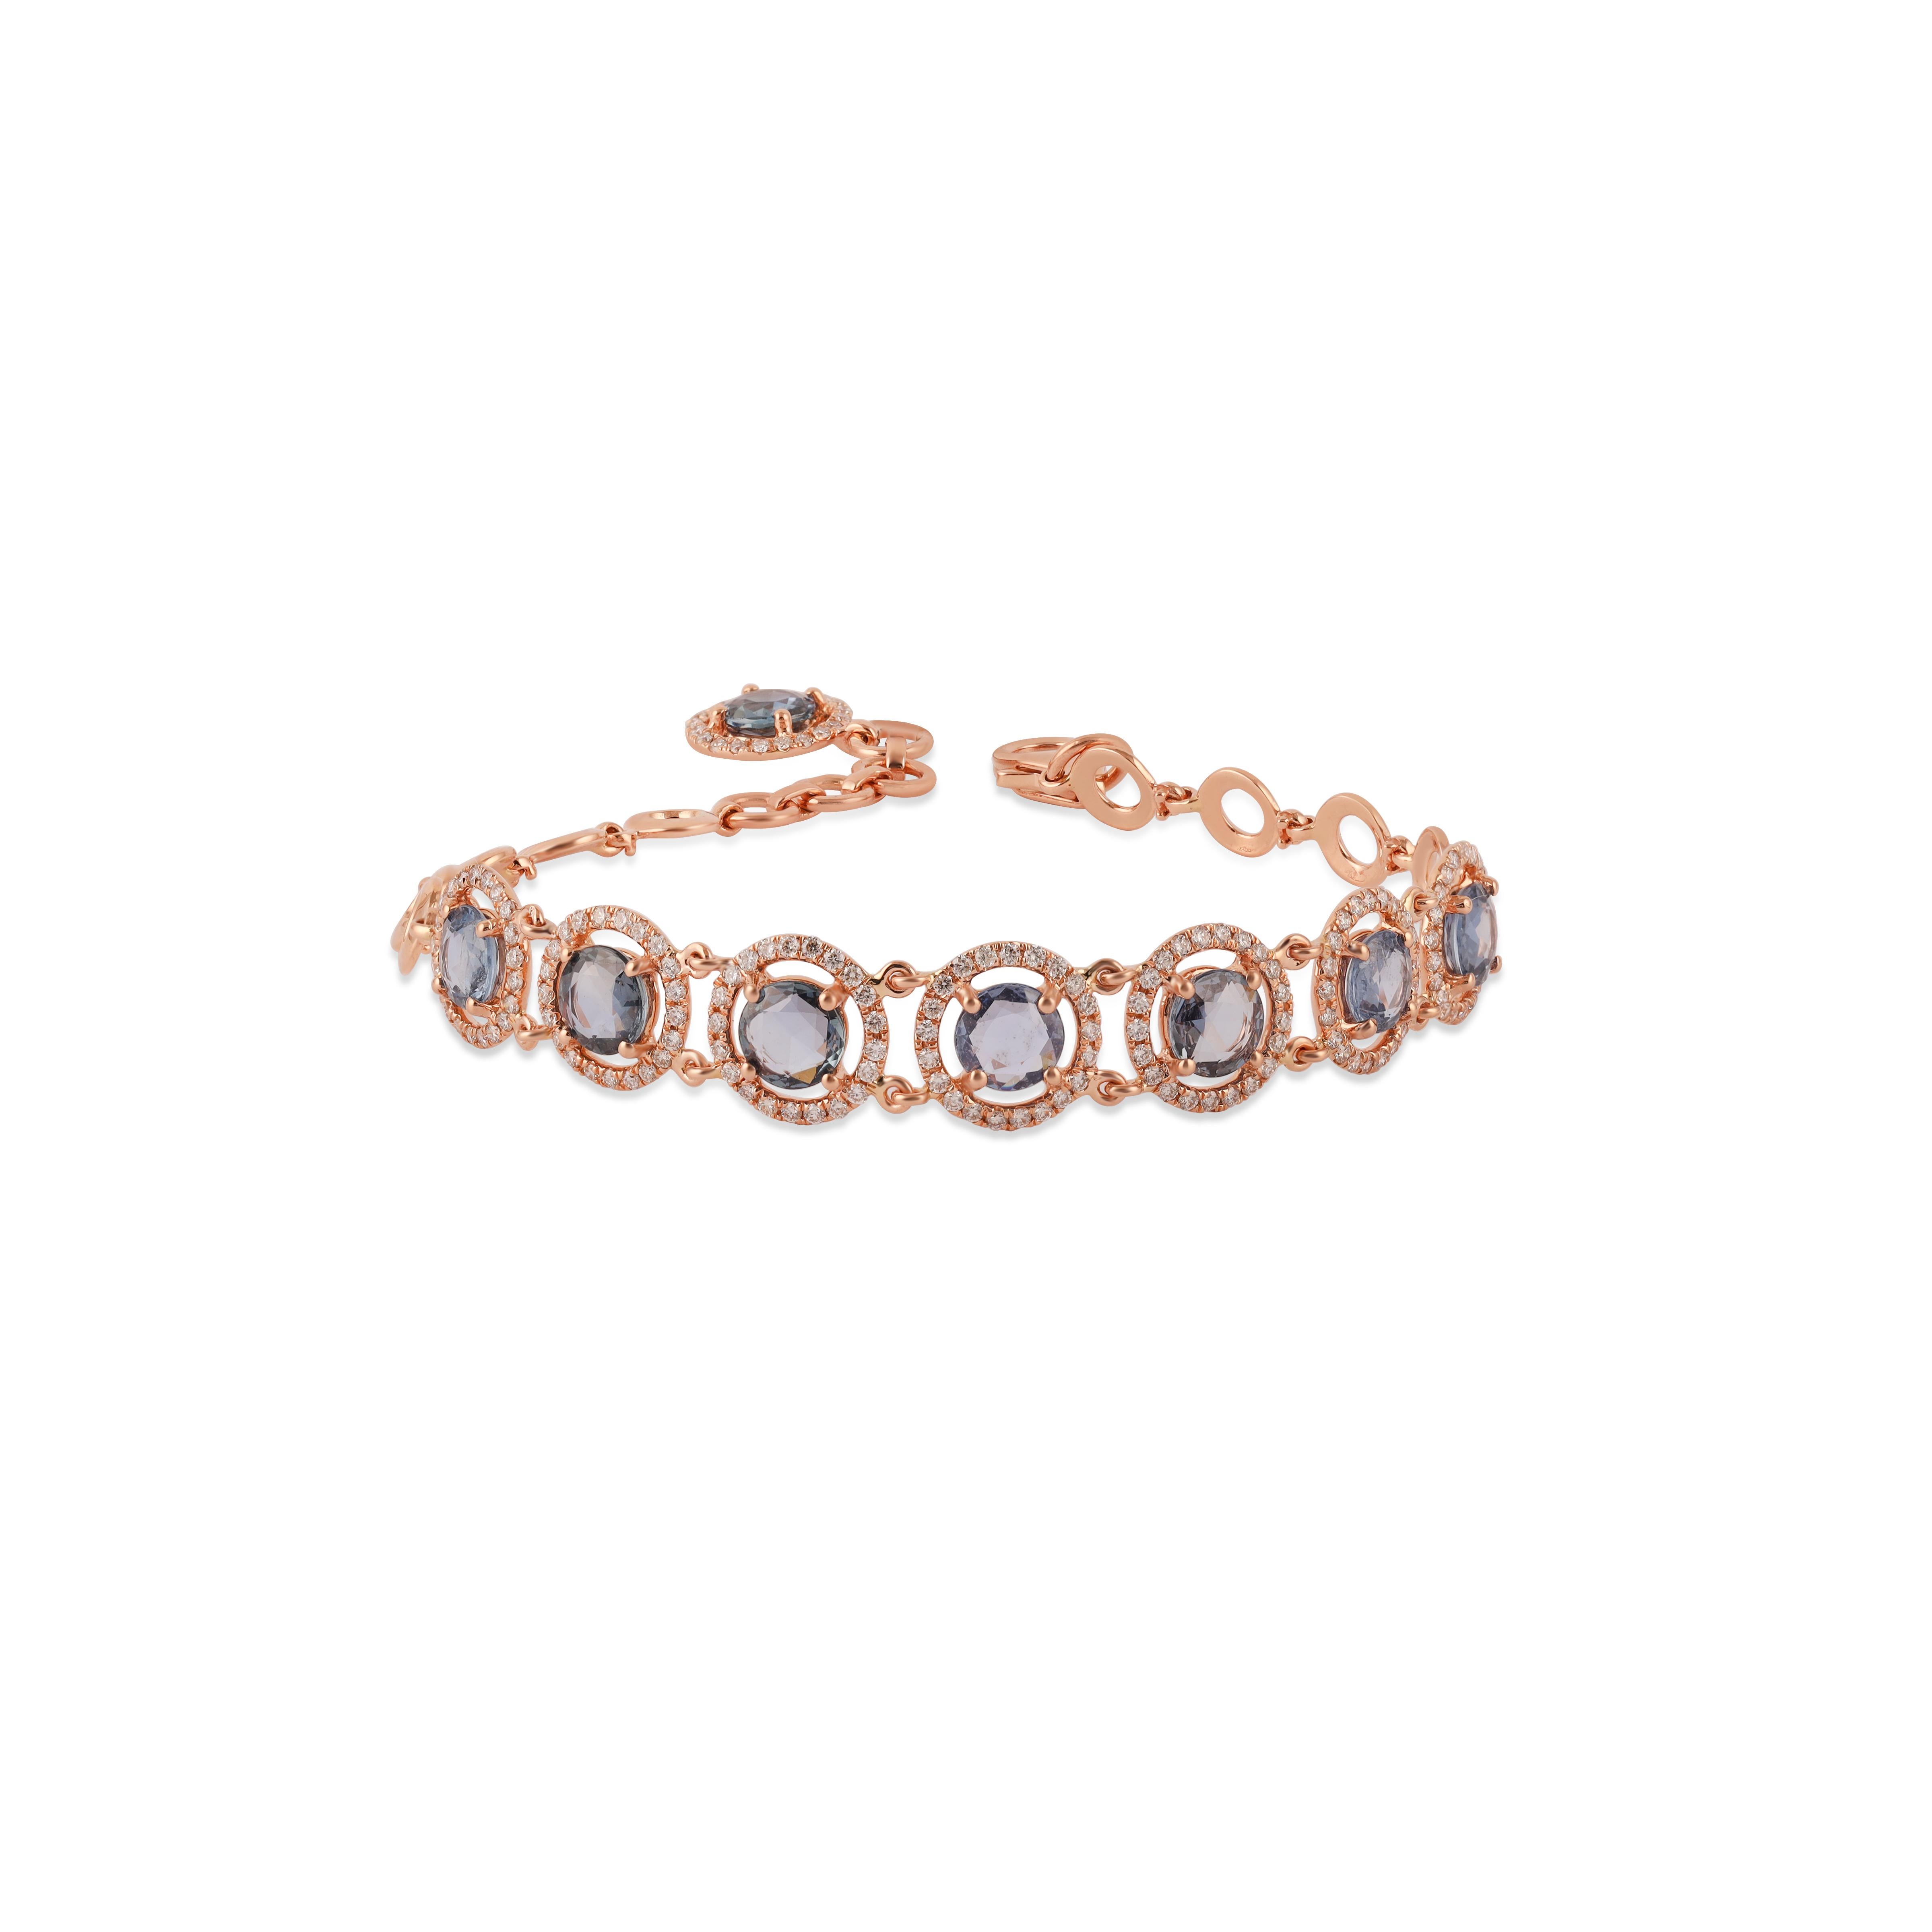 Un très beau et délicat bracelet à chaîne de saphirs en or rose 18 carats et diamants. Le poids des saphirs bleus est de 3.63 carats. Le poids des diamants est de 1,00 carat. Le poids net de l'or est de 7.31 grammes.


Taille - normale 6.5